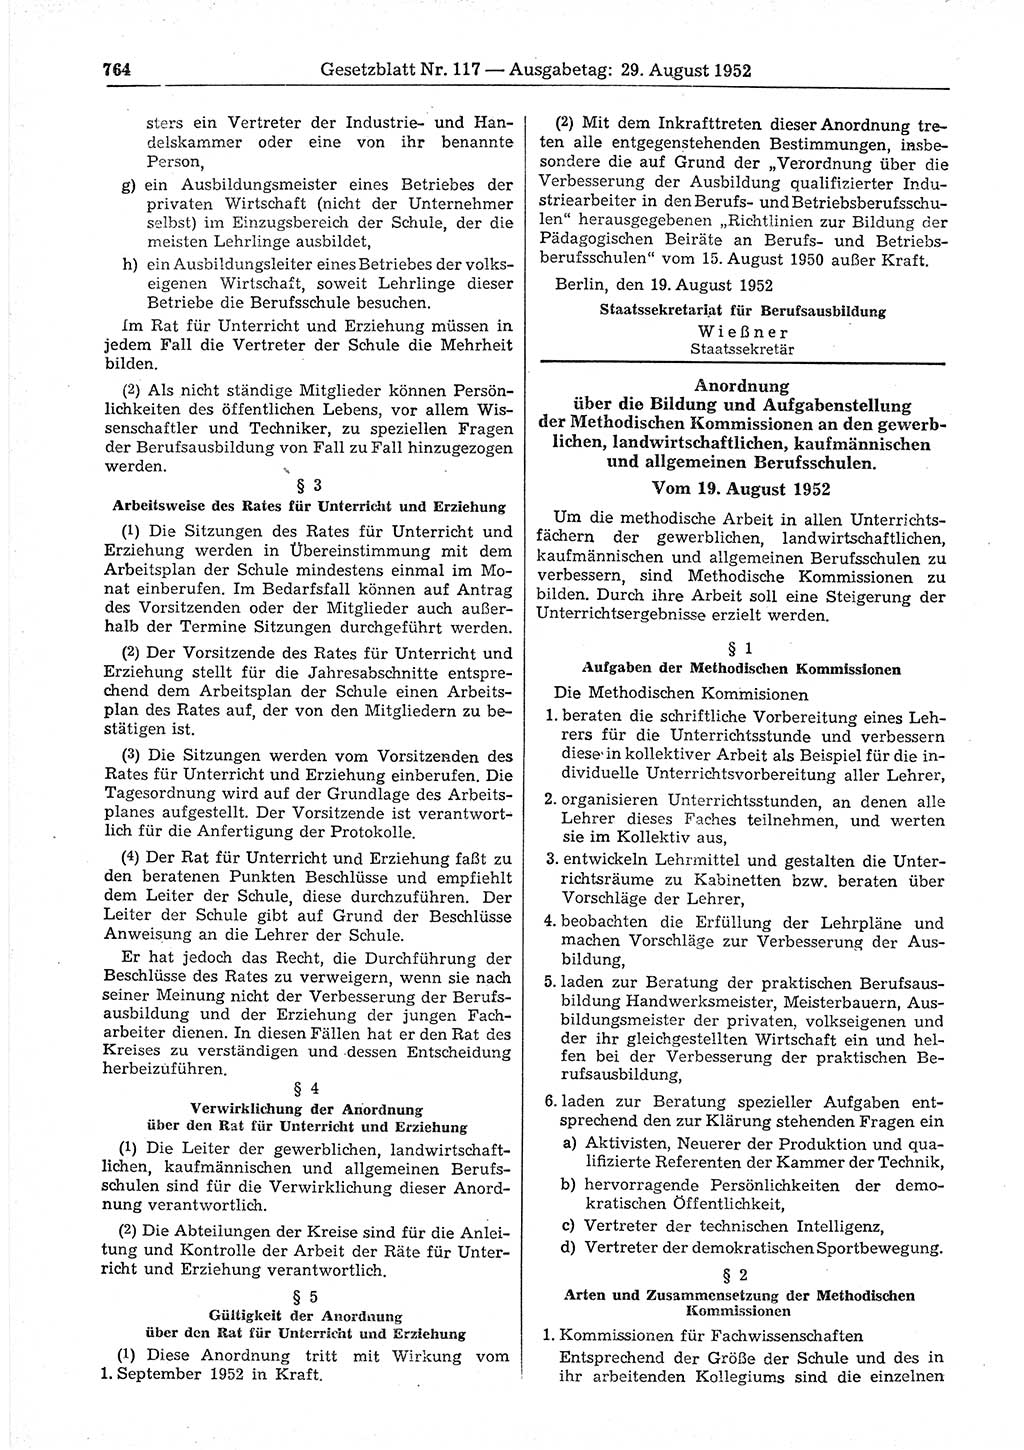 Gesetzblatt (GBl.) der Deutschen Demokratischen Republik (DDR) 1952, Seite 764 (GBl. DDR 1952, S. 764)